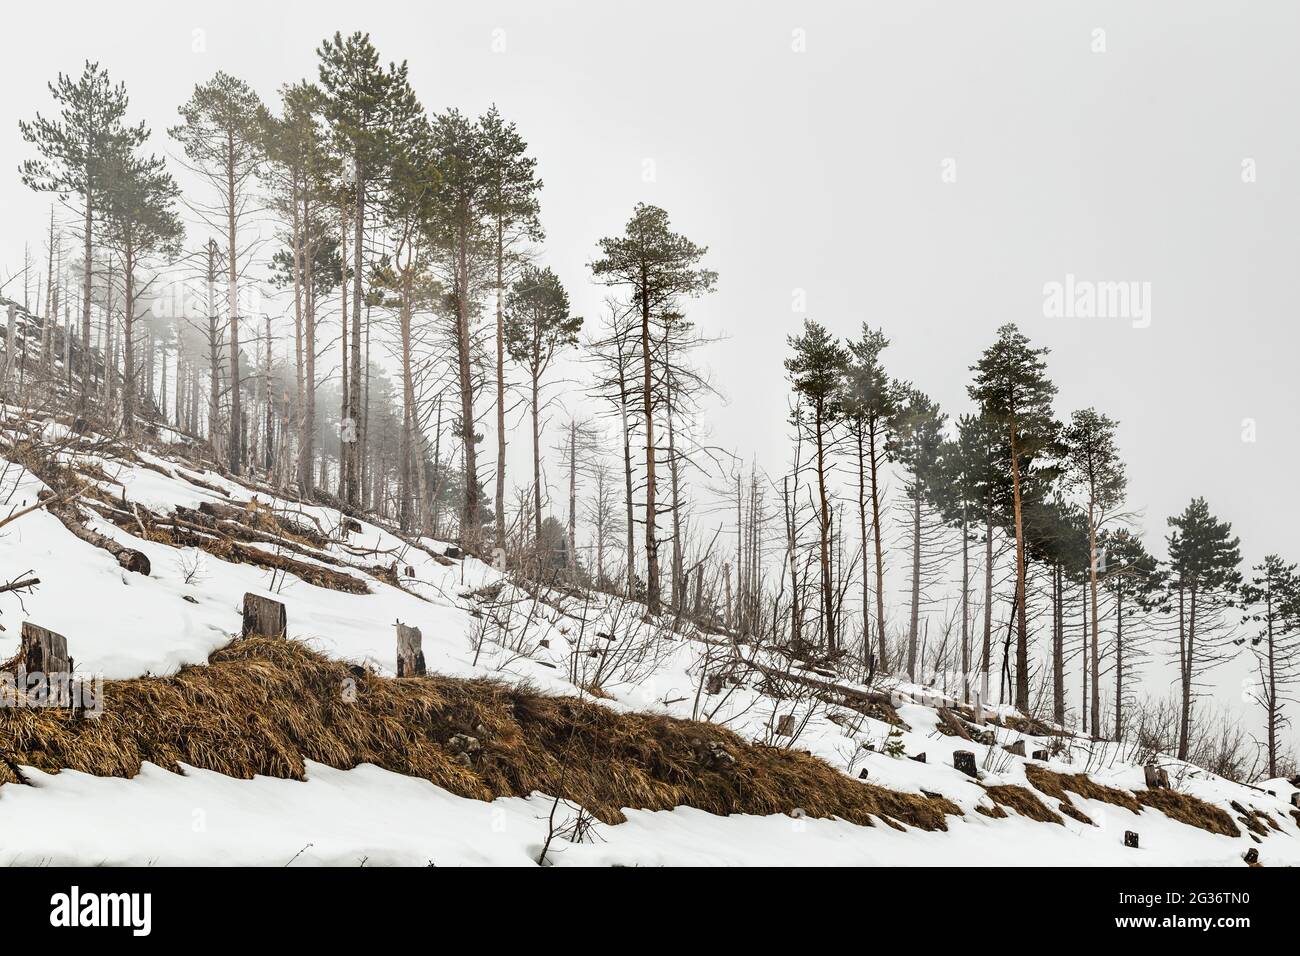 Pini, con il fogliame solo sulla sommità del tronco, lungo la cresta di una collina innevata immersa nella nebbia. Abruzzo, Italia, Europa Foto Stock